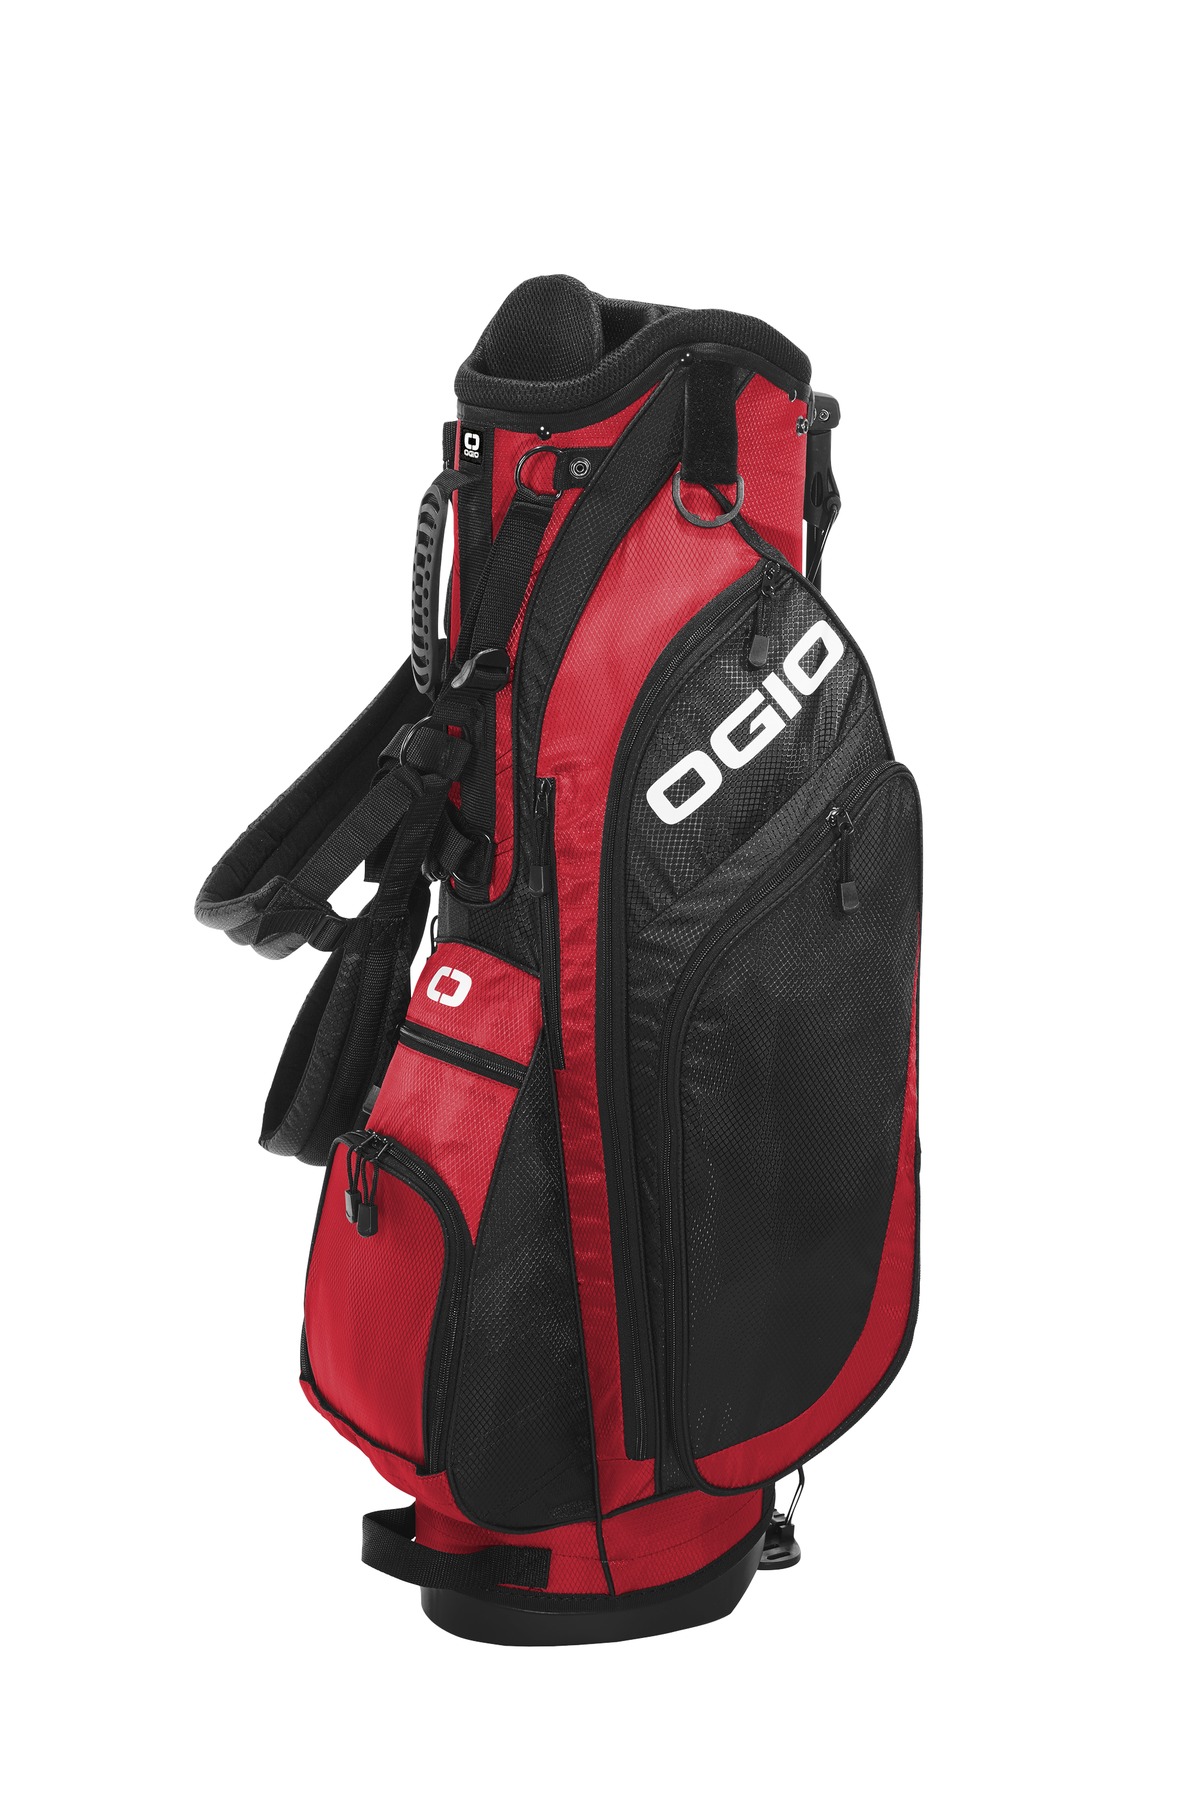 OGIO XL (Xtra-Light) 20 Golf Bag-OGIO